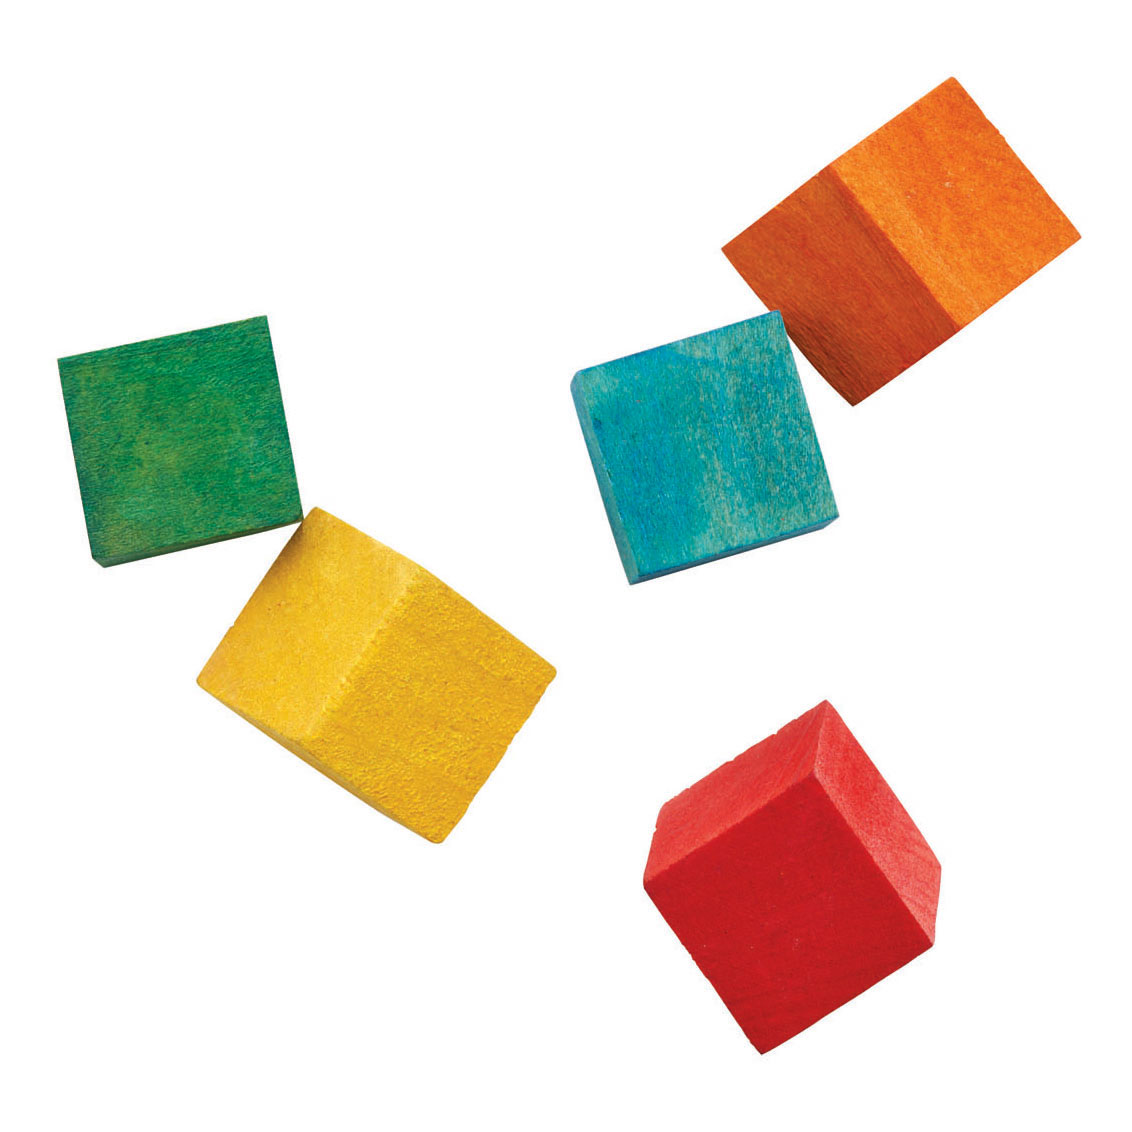 Colorations - Blocs de cubes en bois colorés, 196e.